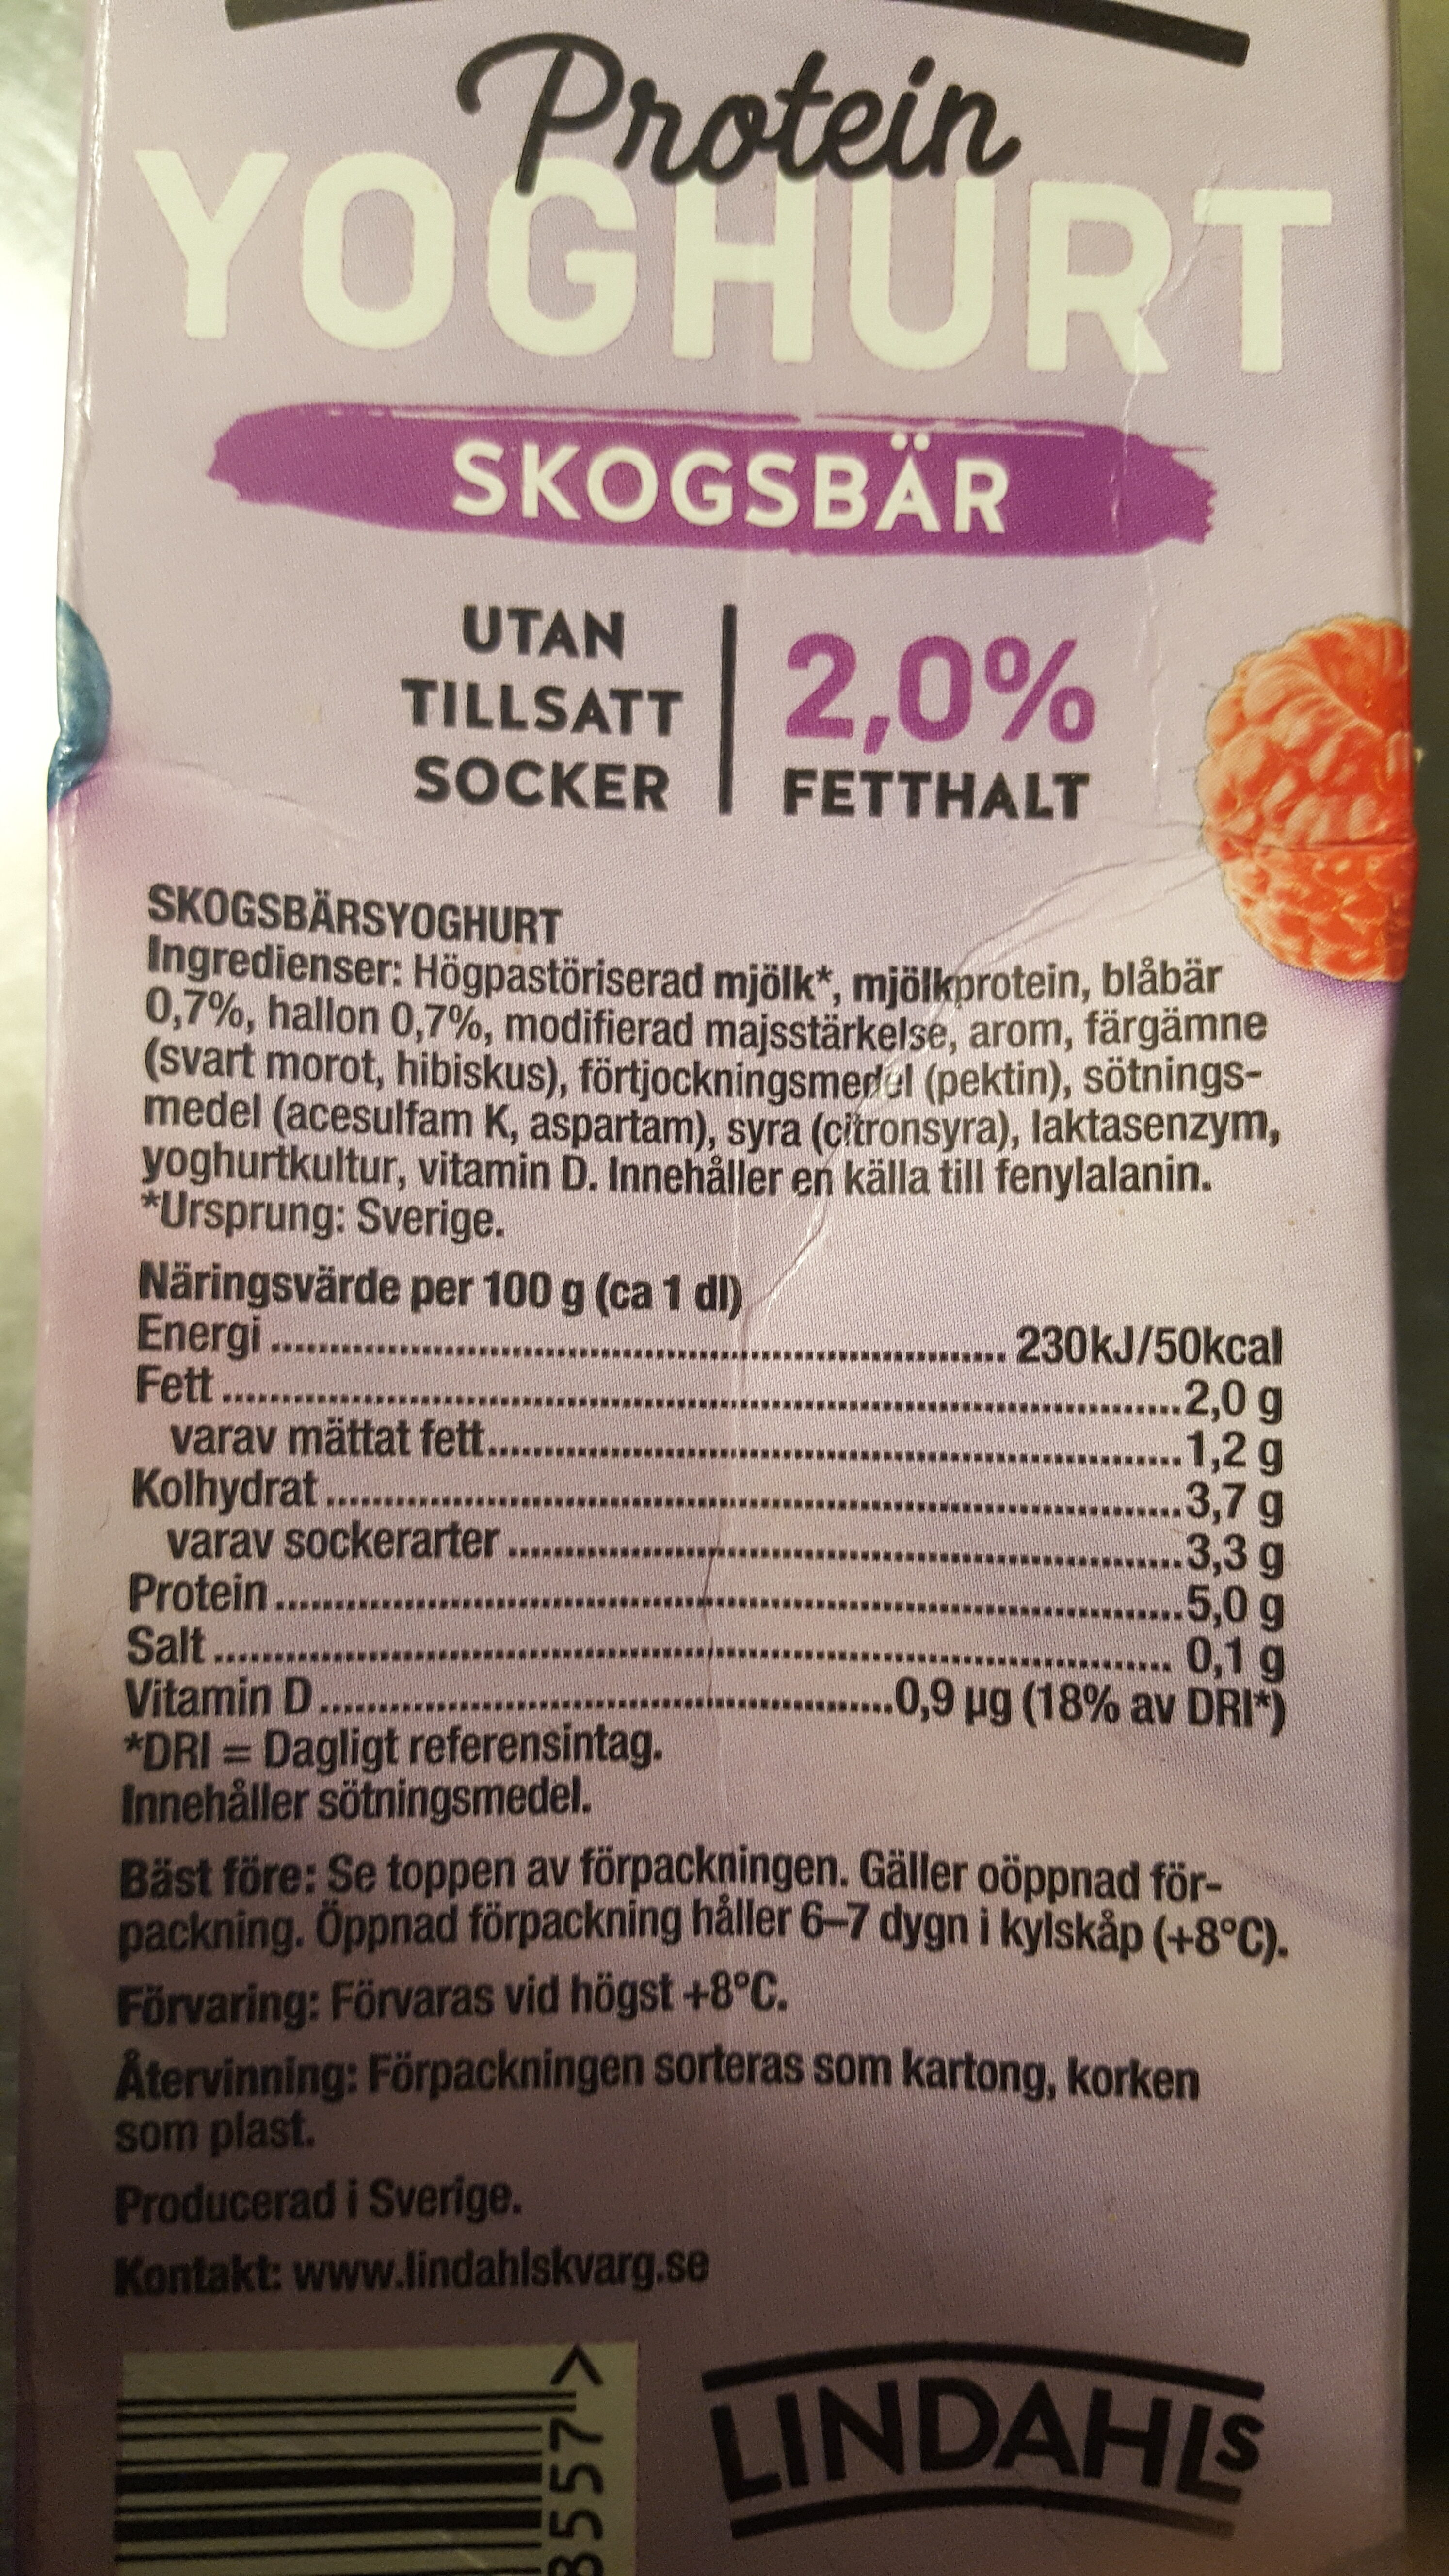 Protein-yoghurt skogsbär - Ingredienser